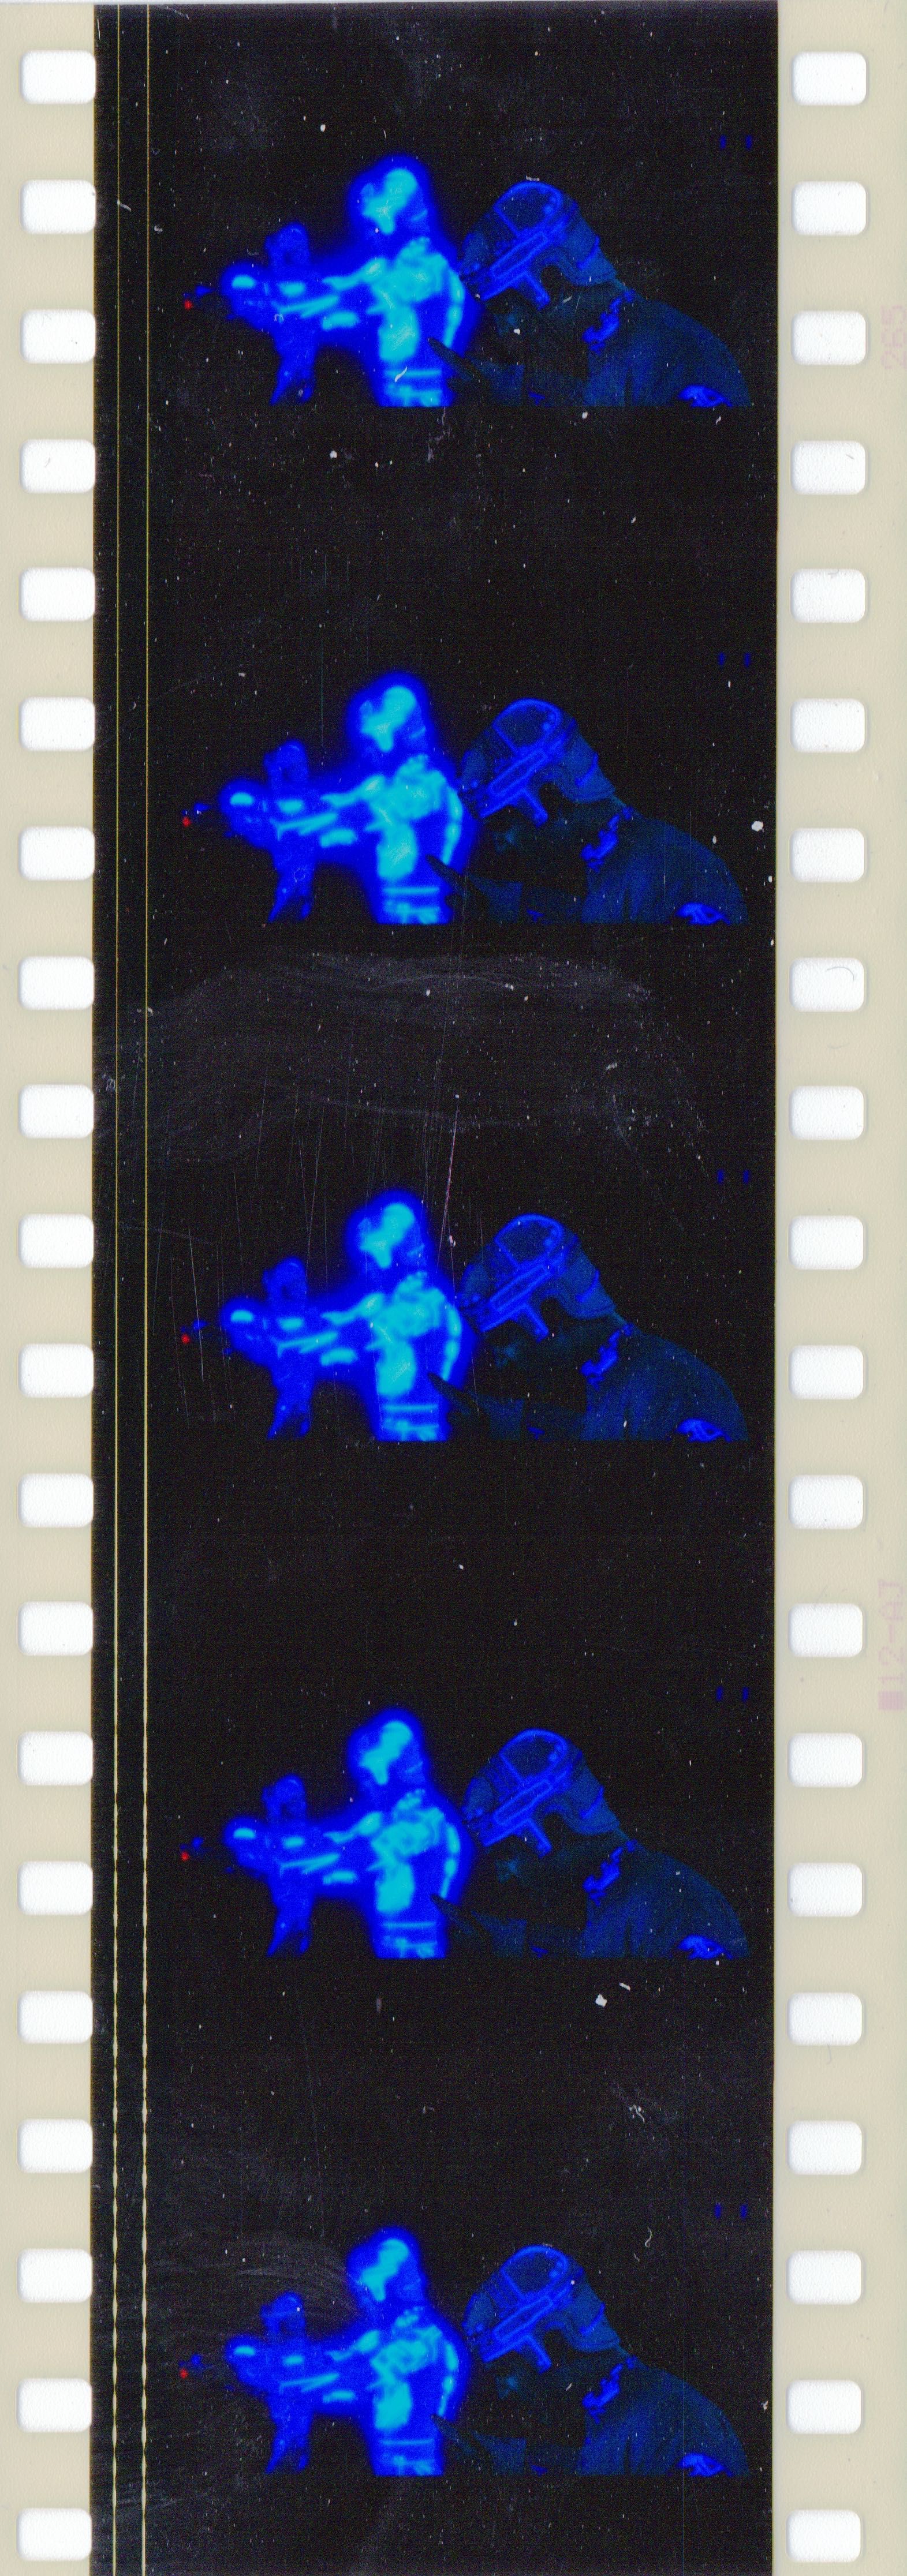 Fotogramas em película 35mm do filme culto TRON